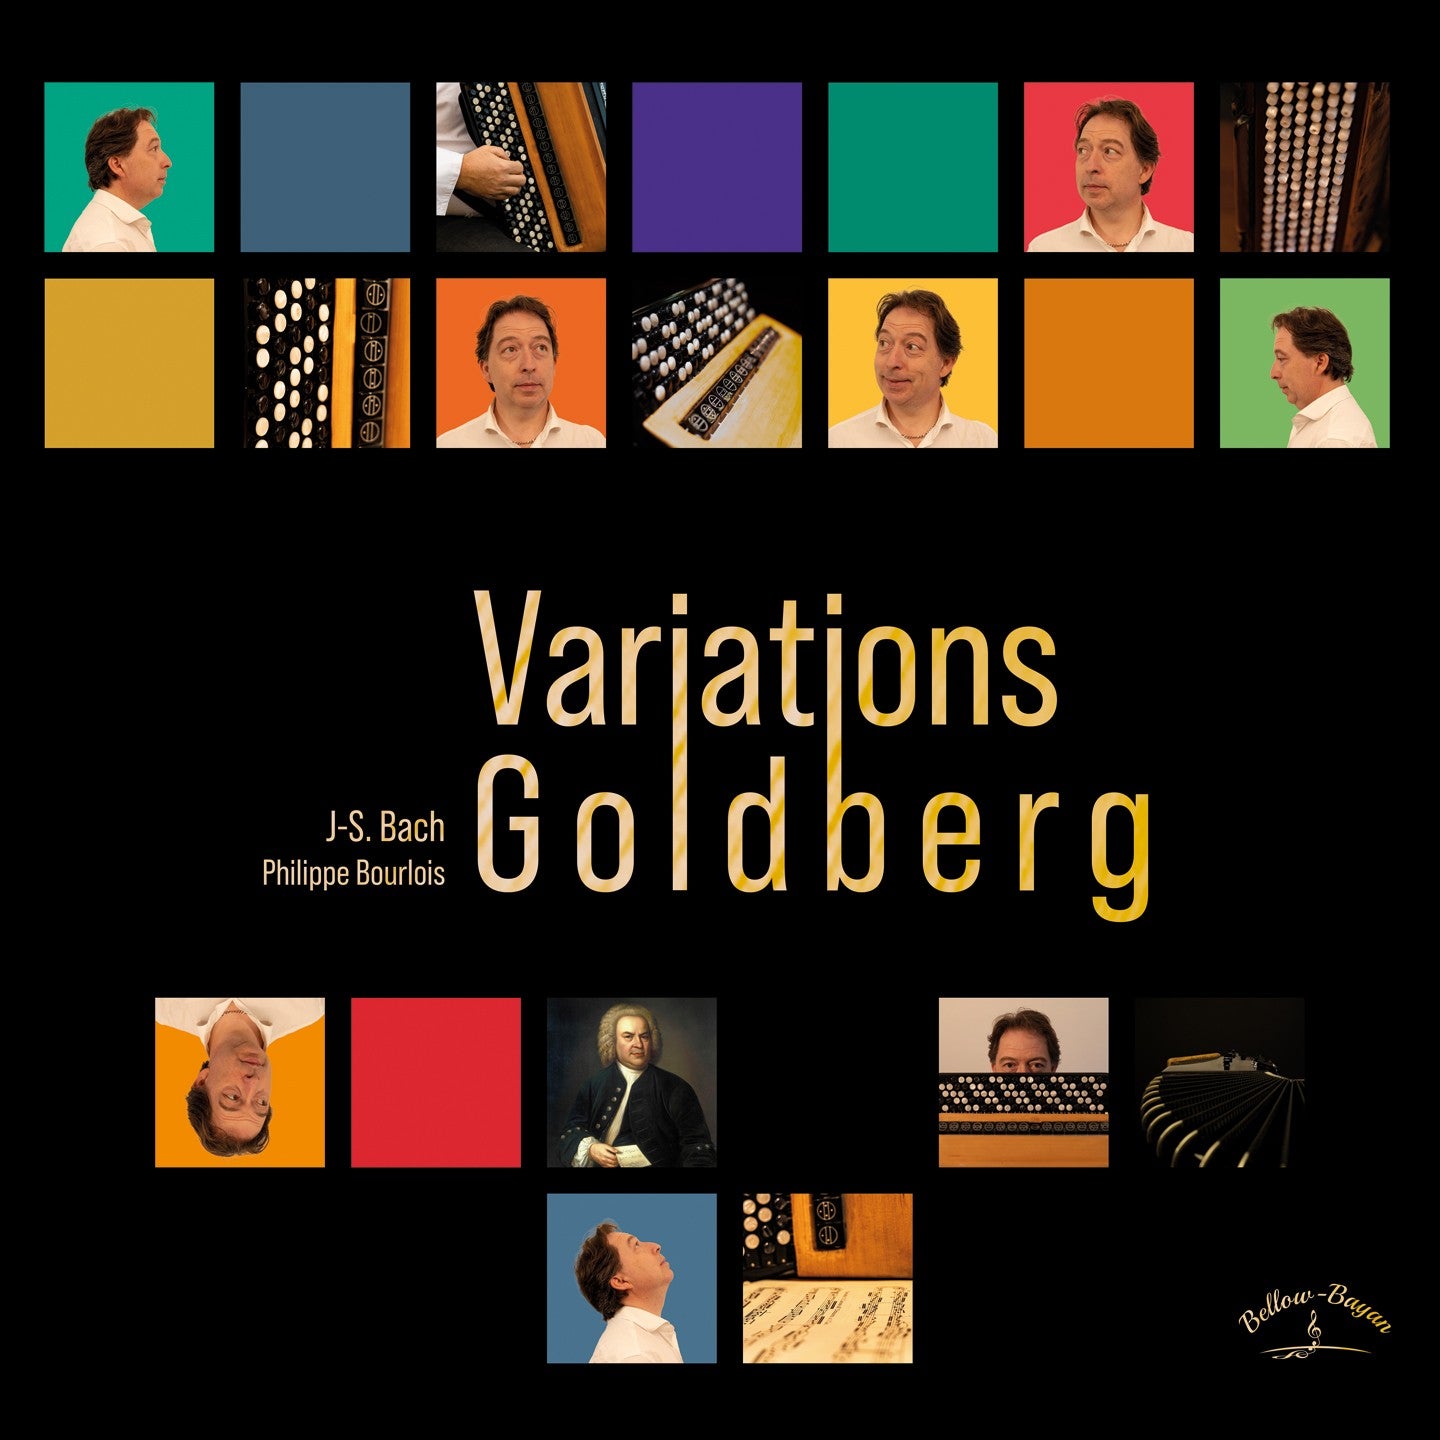 Pochette de : VARIATIONS GOLDBERG - J.S. BACH - PHILIPPE BOURLOIS (CD)